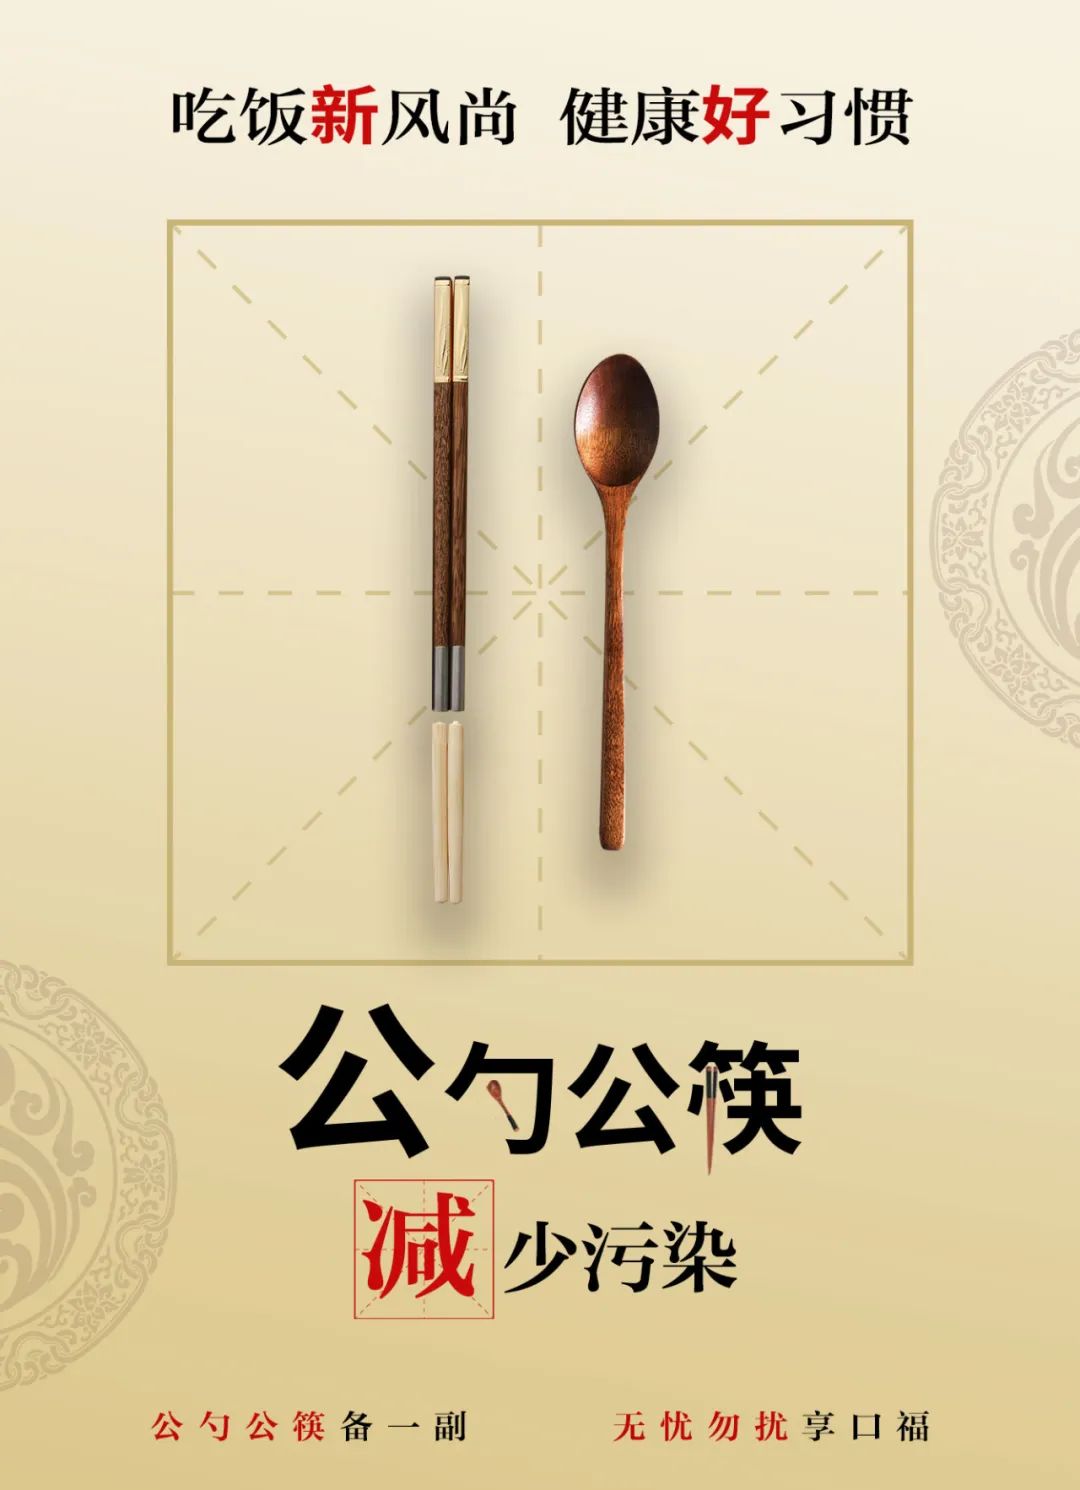 筷来接力推行公筷公勺共建文明餐桌倡议书